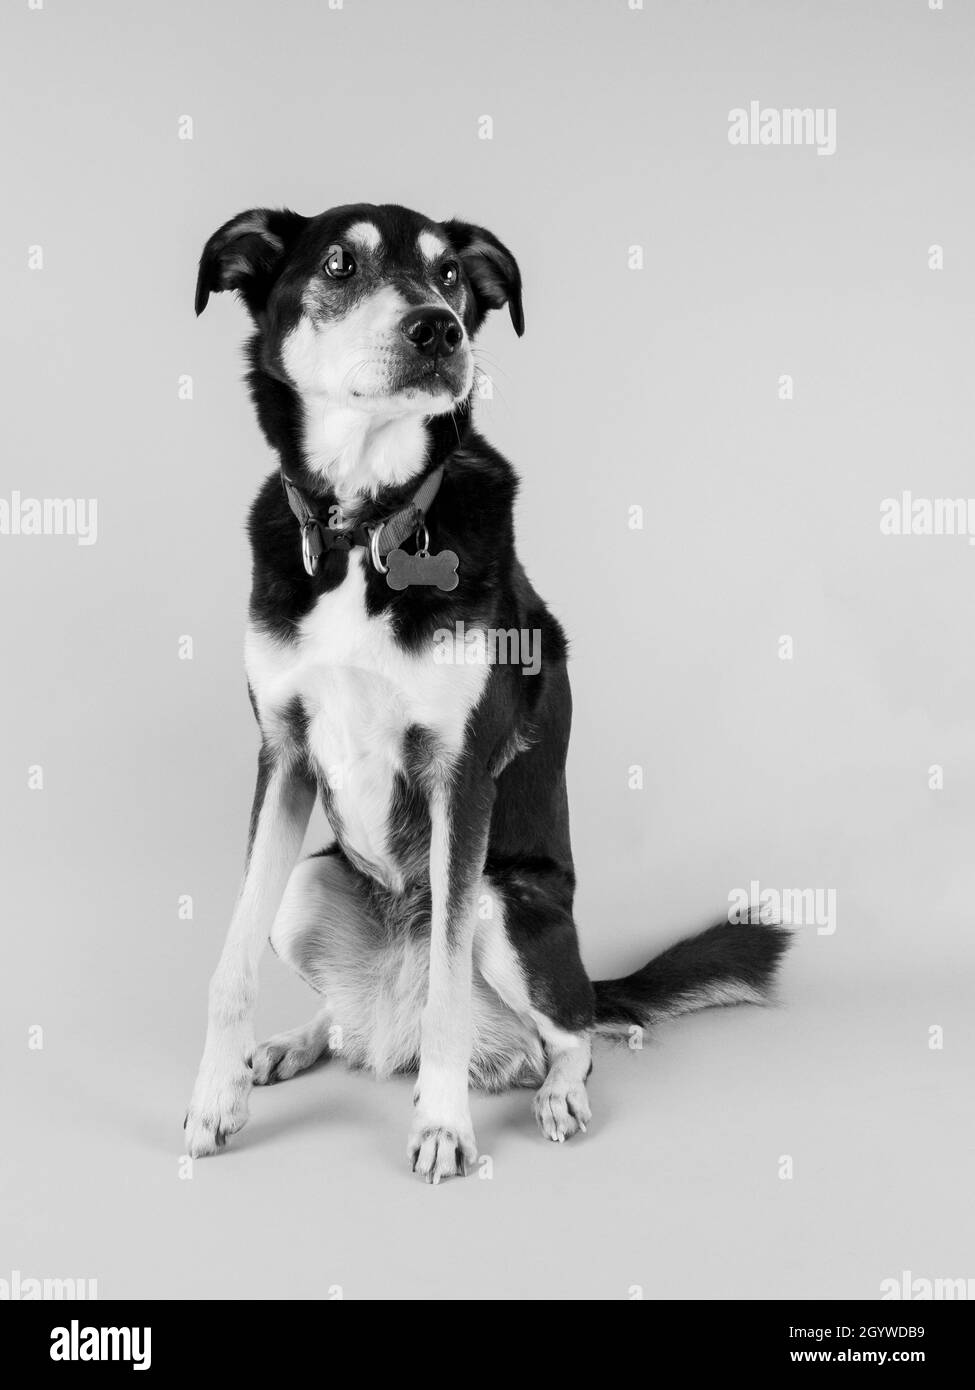 B&W studio portrait of a dog. Stock Photo